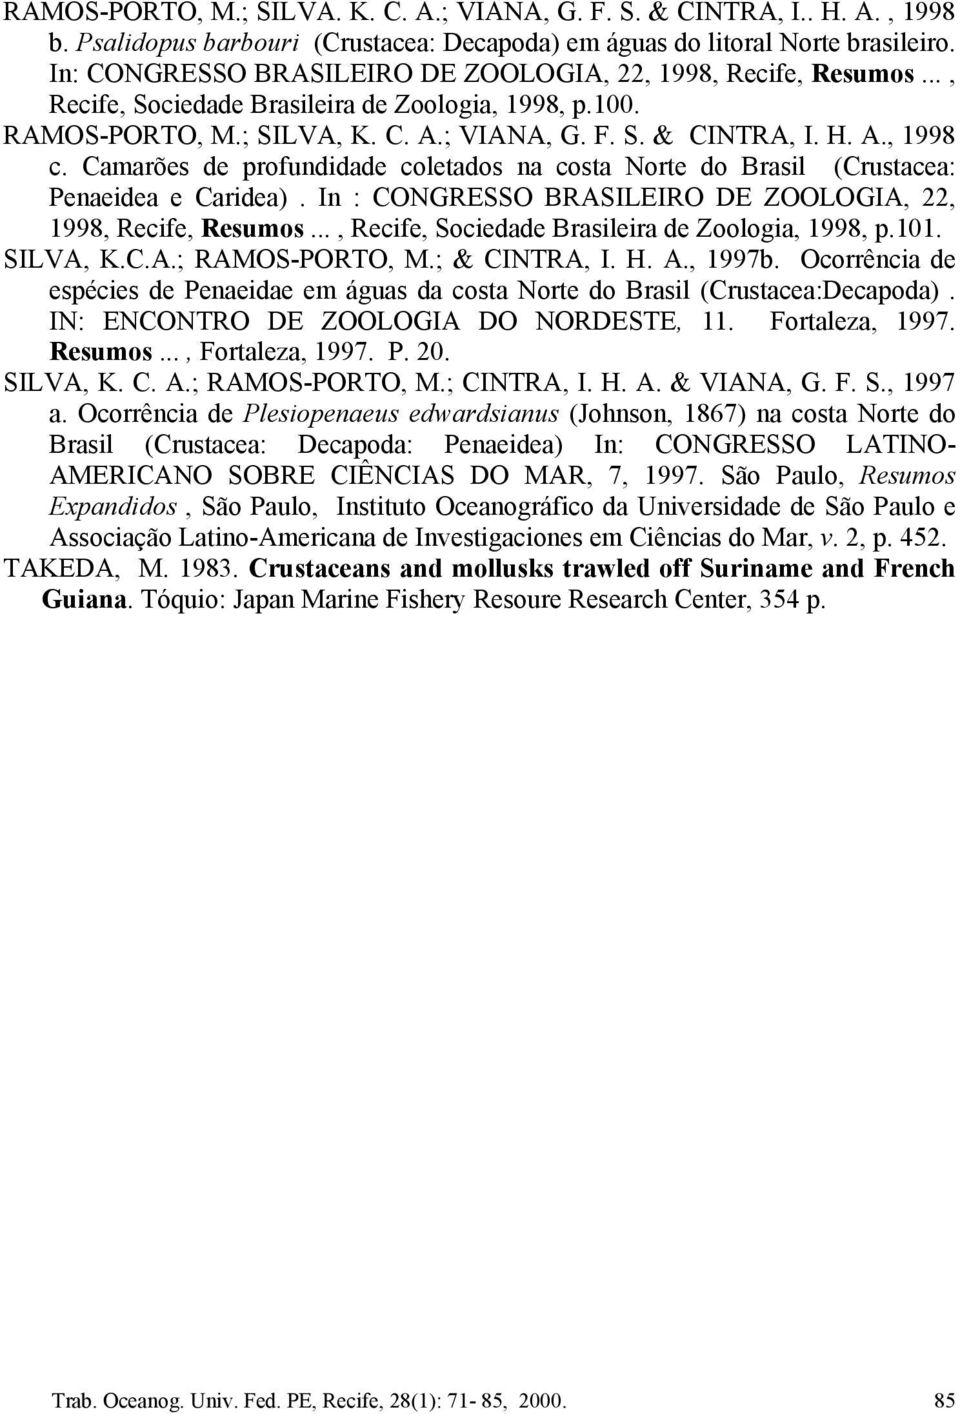 Camarões de profundidade coletados na costa Norte do Brasil (Crustacea: Penaeidea e Caridea). In : CONGRESSO BRASILEIRO DE ZOOLOGIA, 22, 1998, Recife, Resumos.